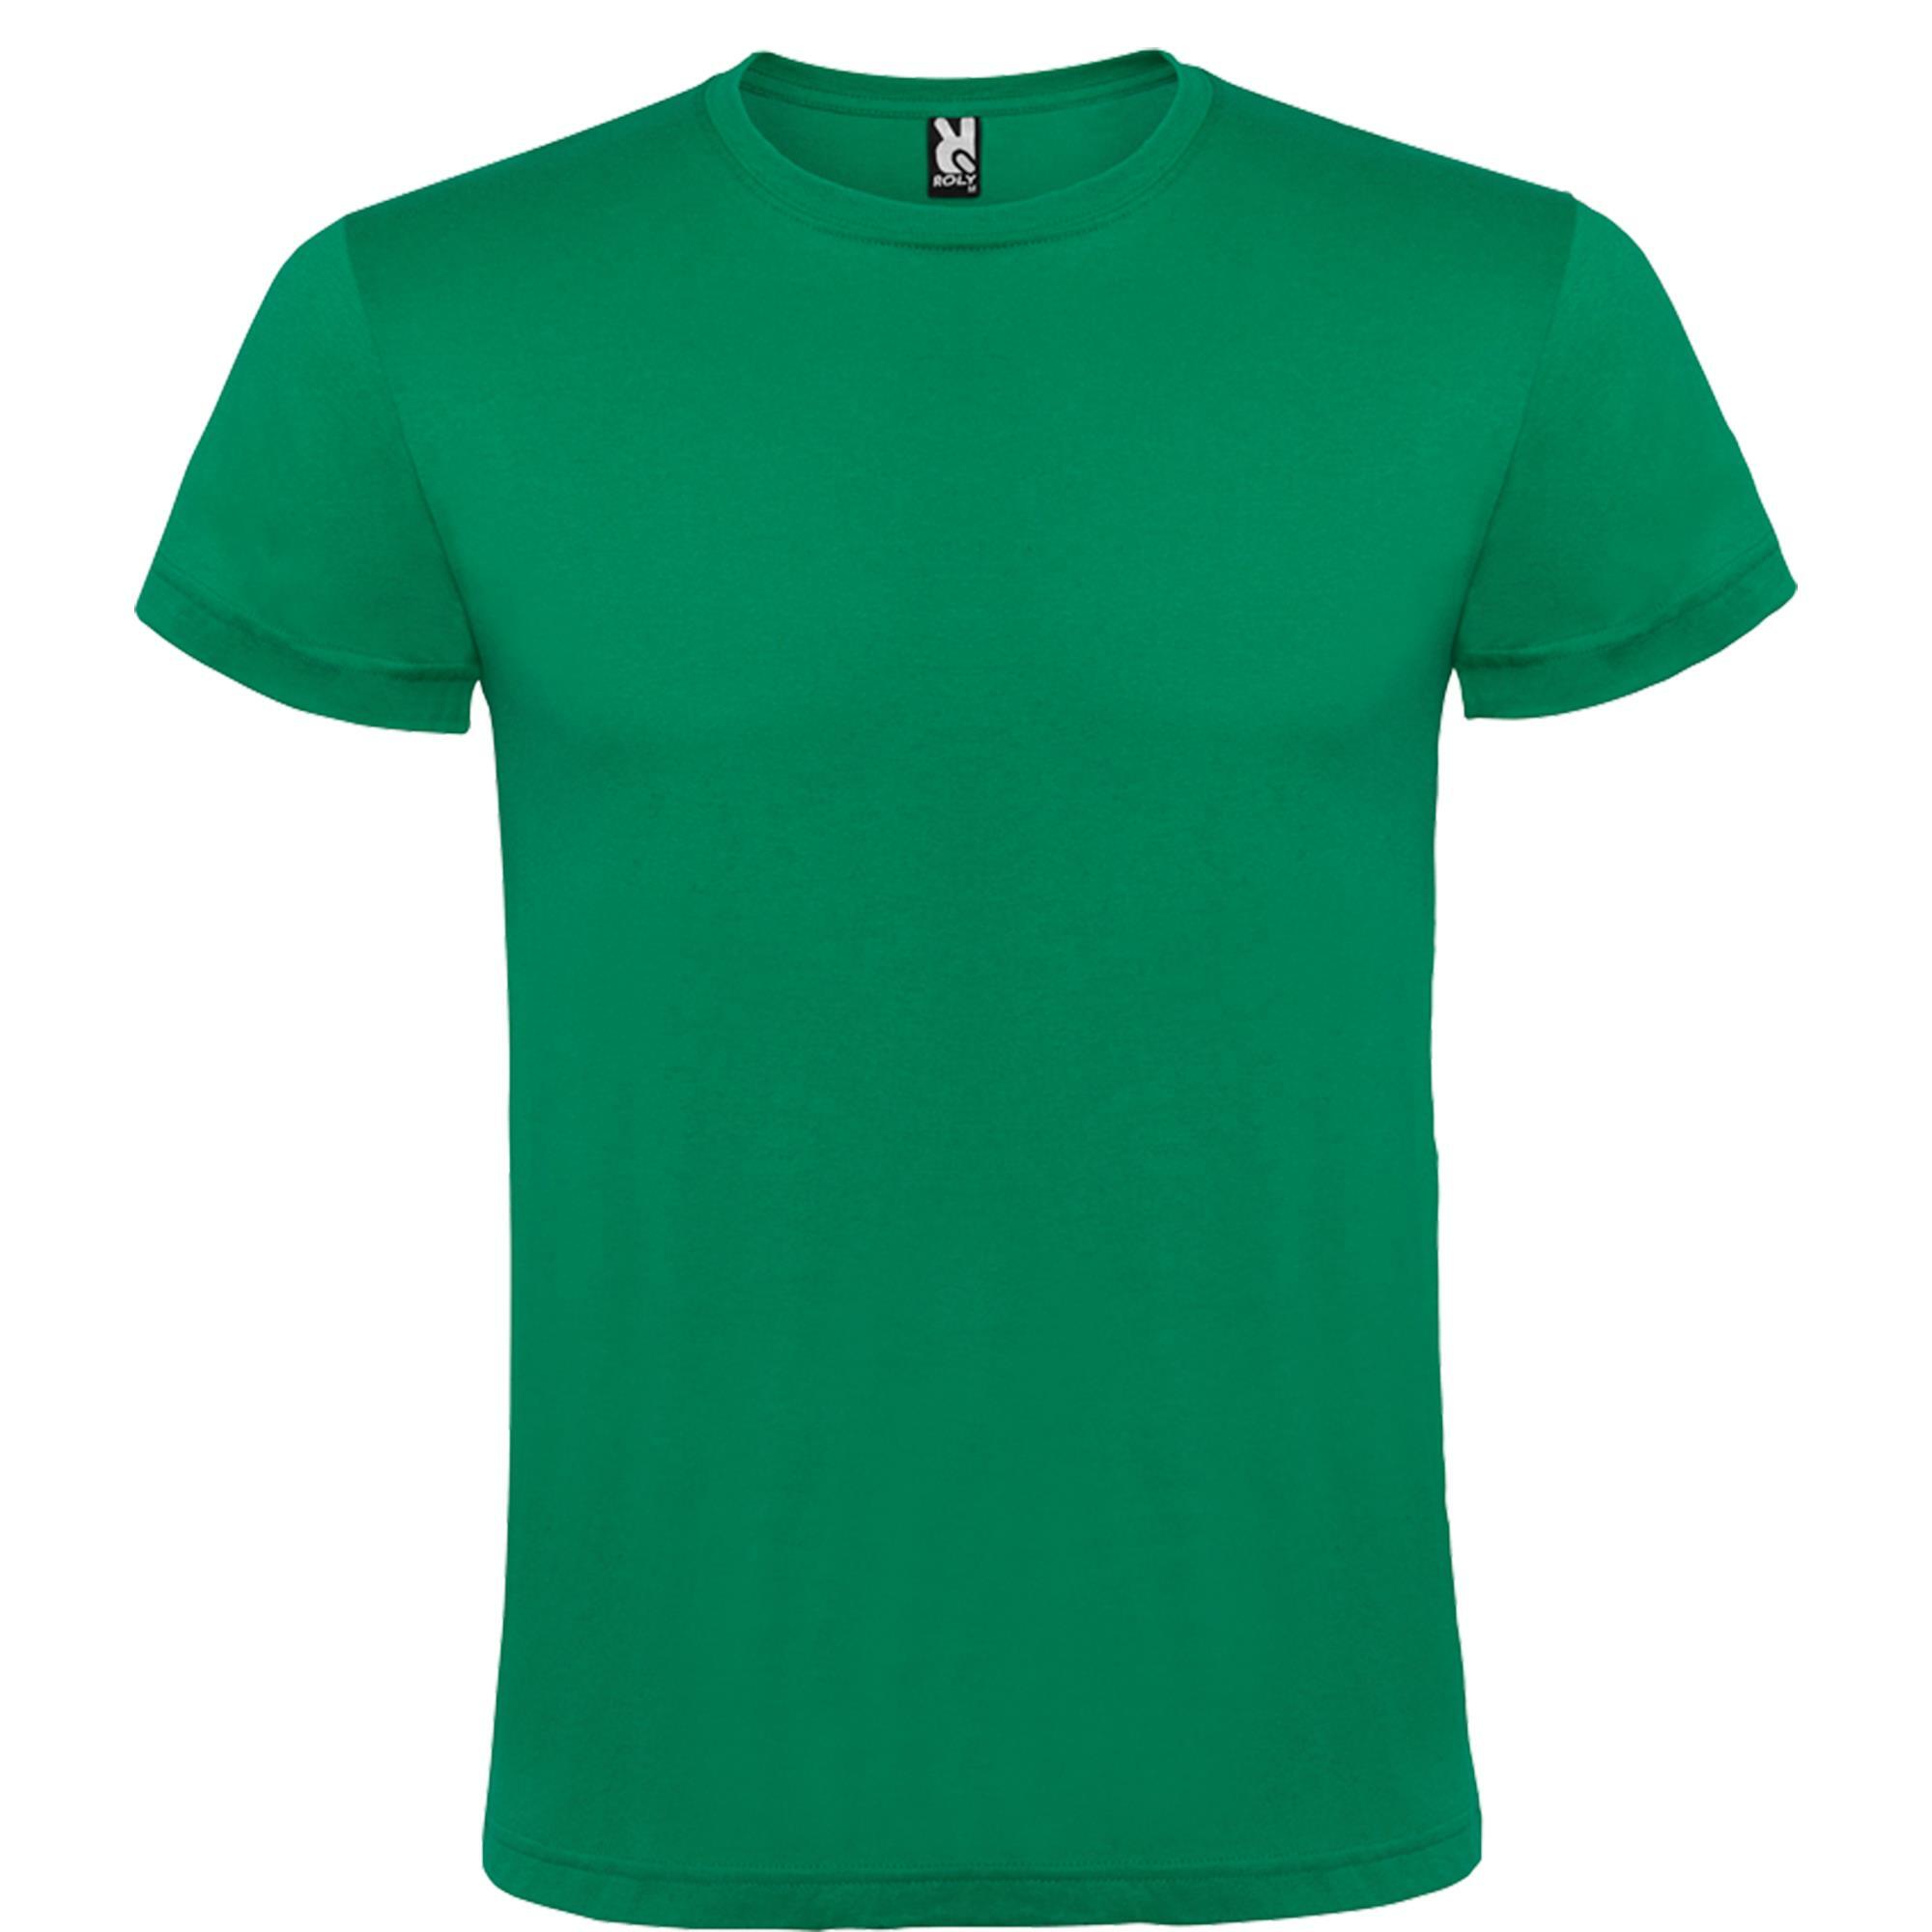 Rondgebreide T-shirt unisex voor volwassen green personalisatie mogelijk